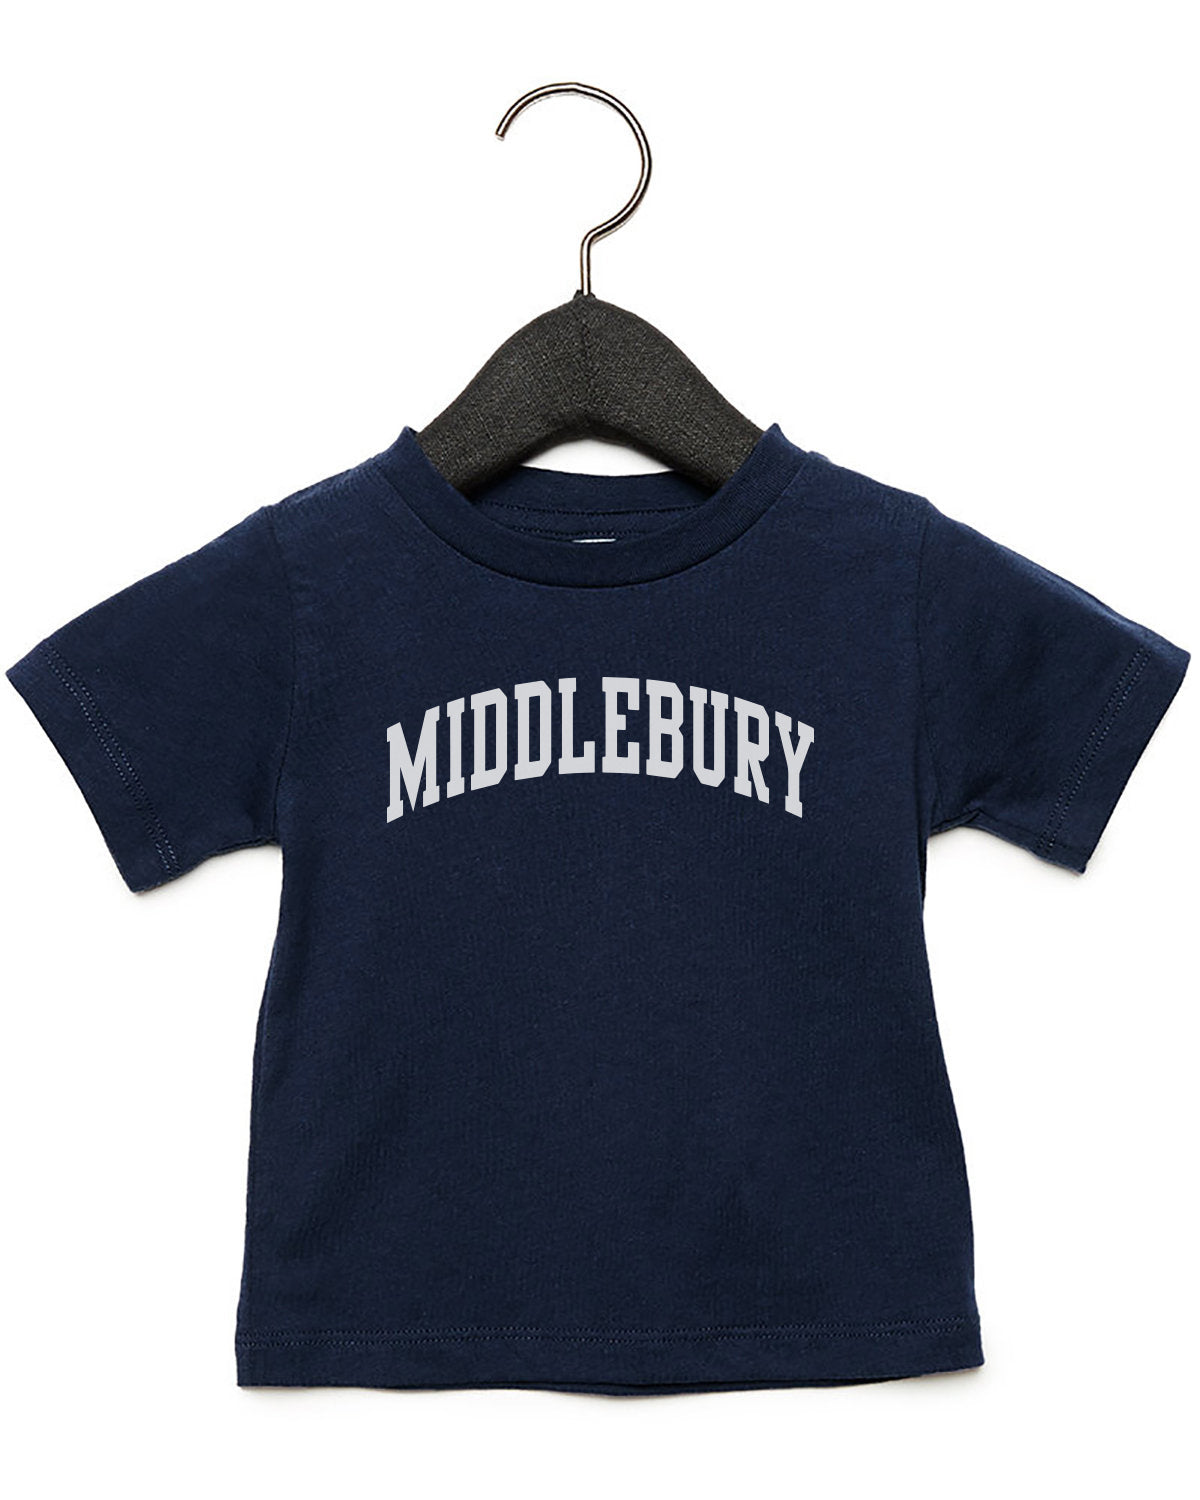 Middlebury Infant T-Shirt (Navy)